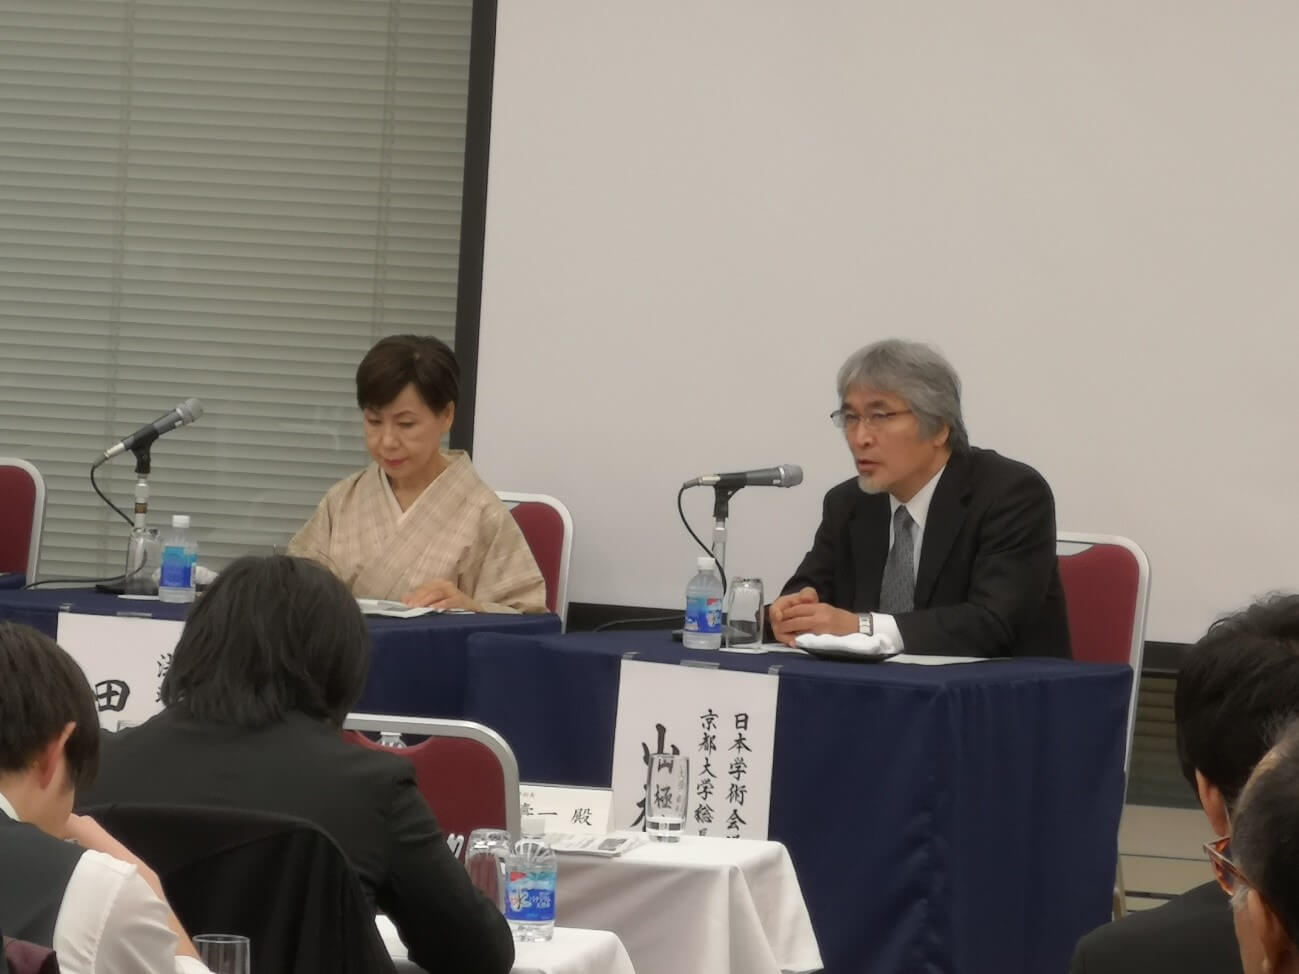 日本产学联合研讨会：对日本的人才培养和利用充满危机感（下）